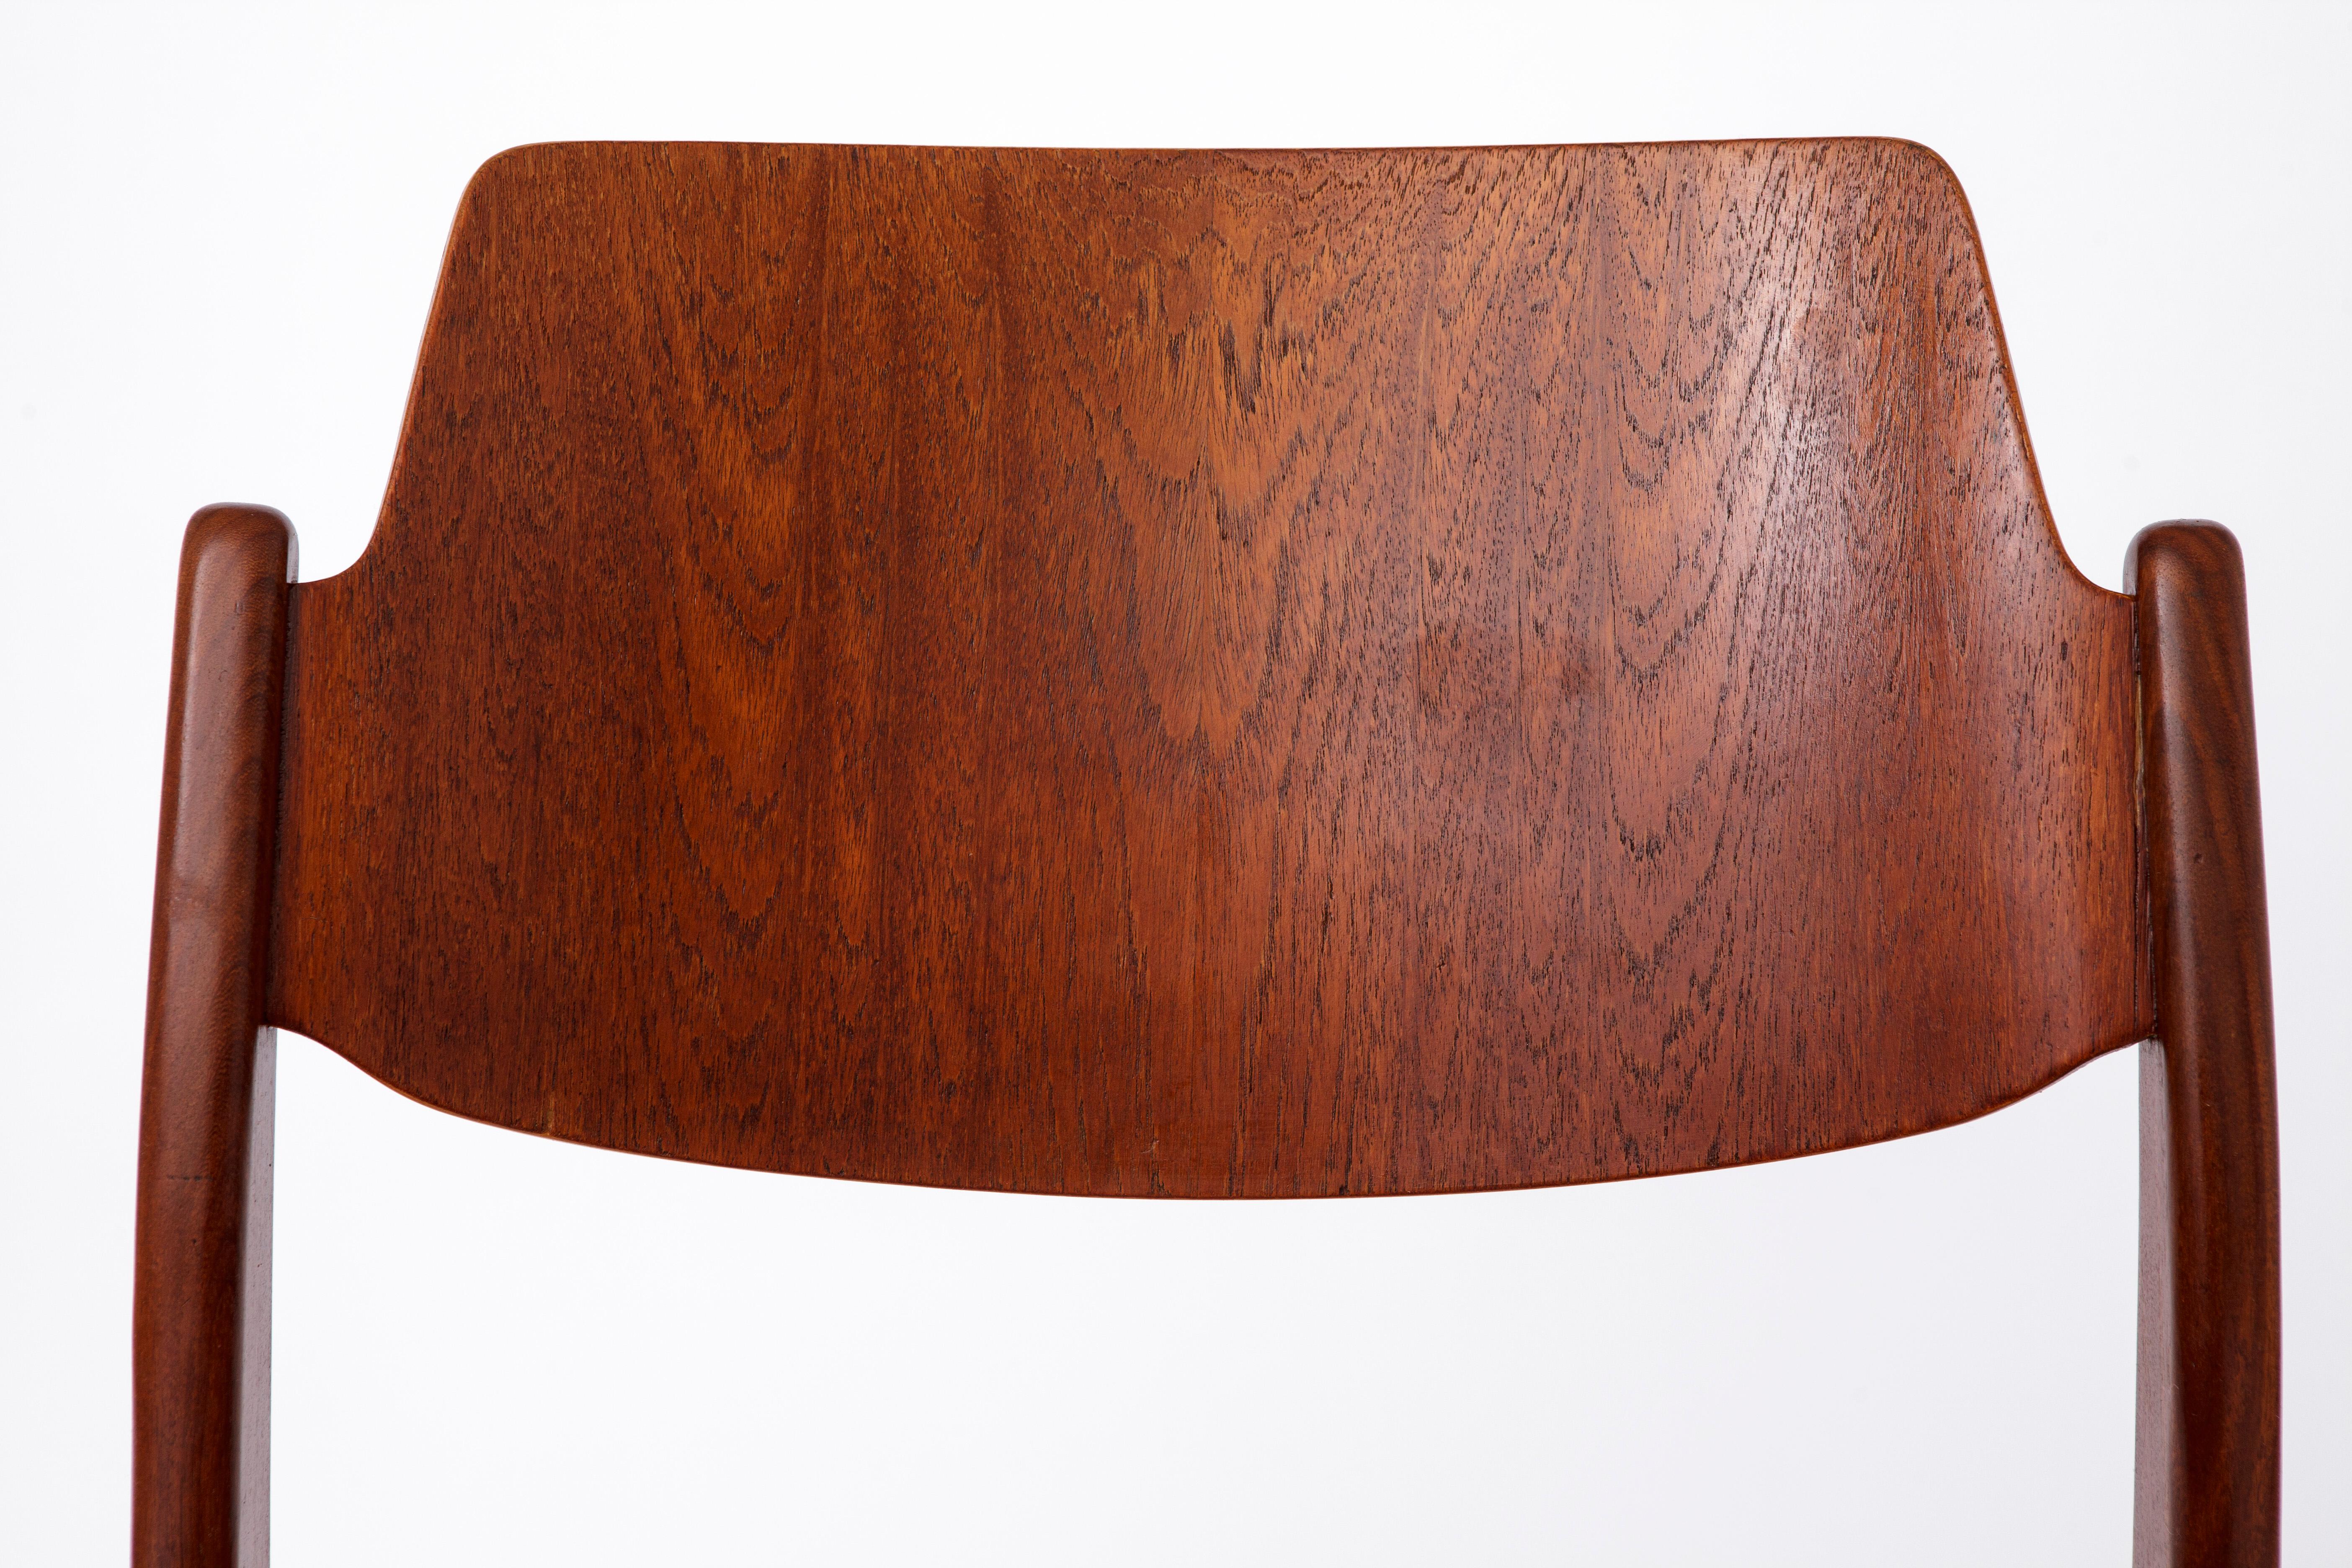 Einzelner Ess- oder Schreibtischstuhl des deutschen Herstellers Wilkhahn. 
Modell: 467A aus den 1960er Jahren. 

Guter Vintage-Zustand. 
Stabiler Stuhlrahmen aus Teakholz. Aufgearbeitet und geölt. 
Neu gepolstert mit lila Sitzbezug. 